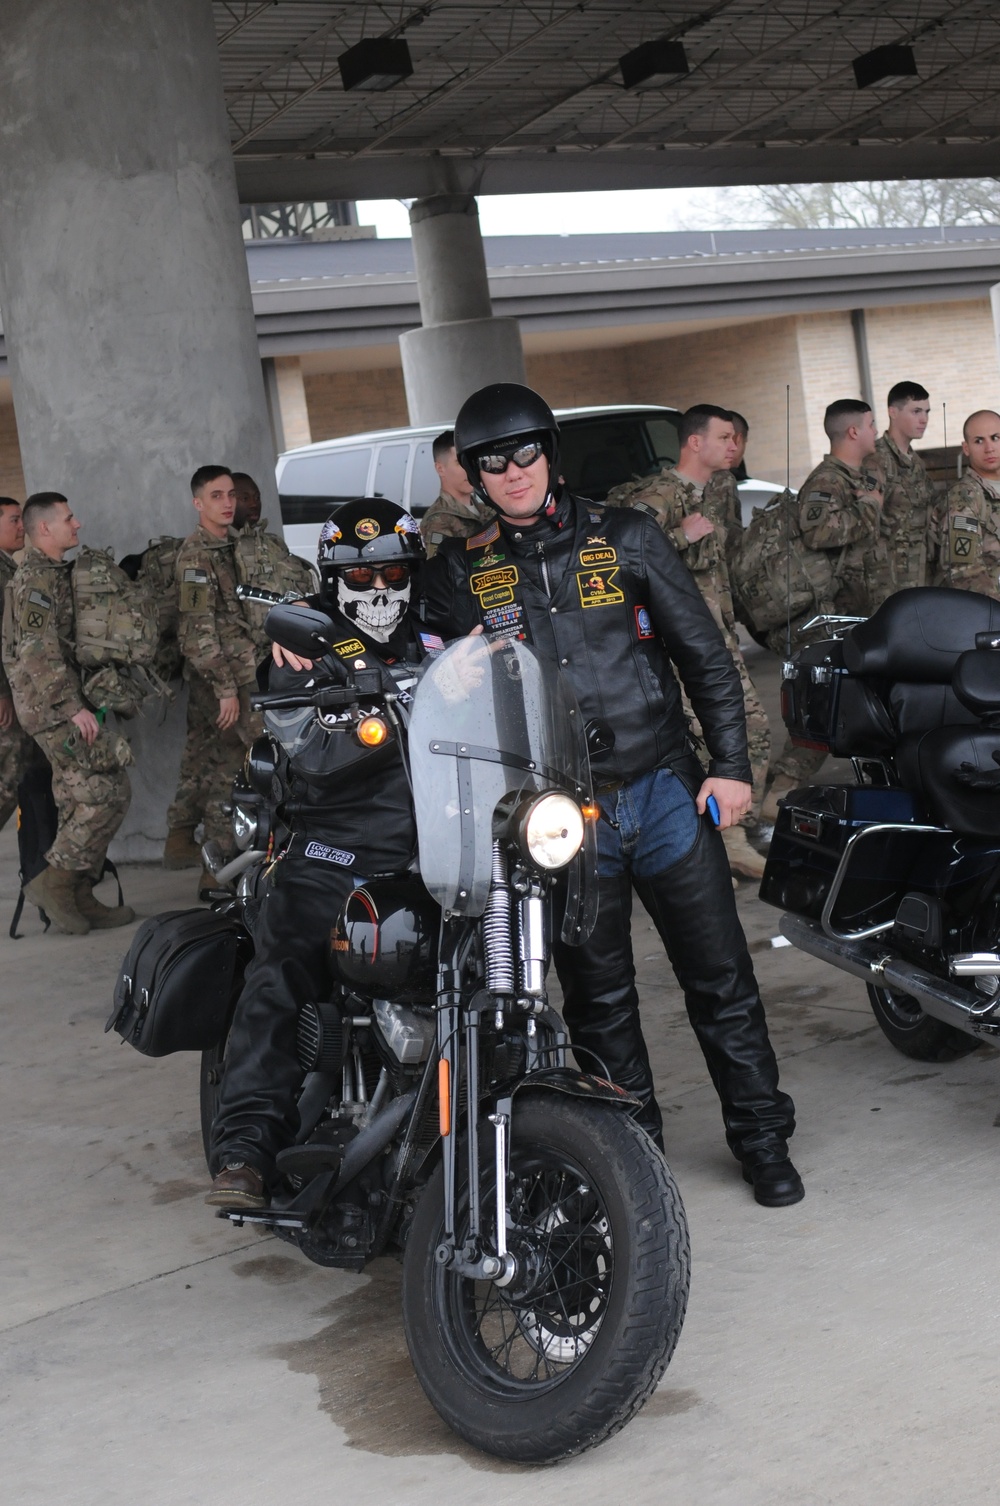 Combat veterans prepare to ride